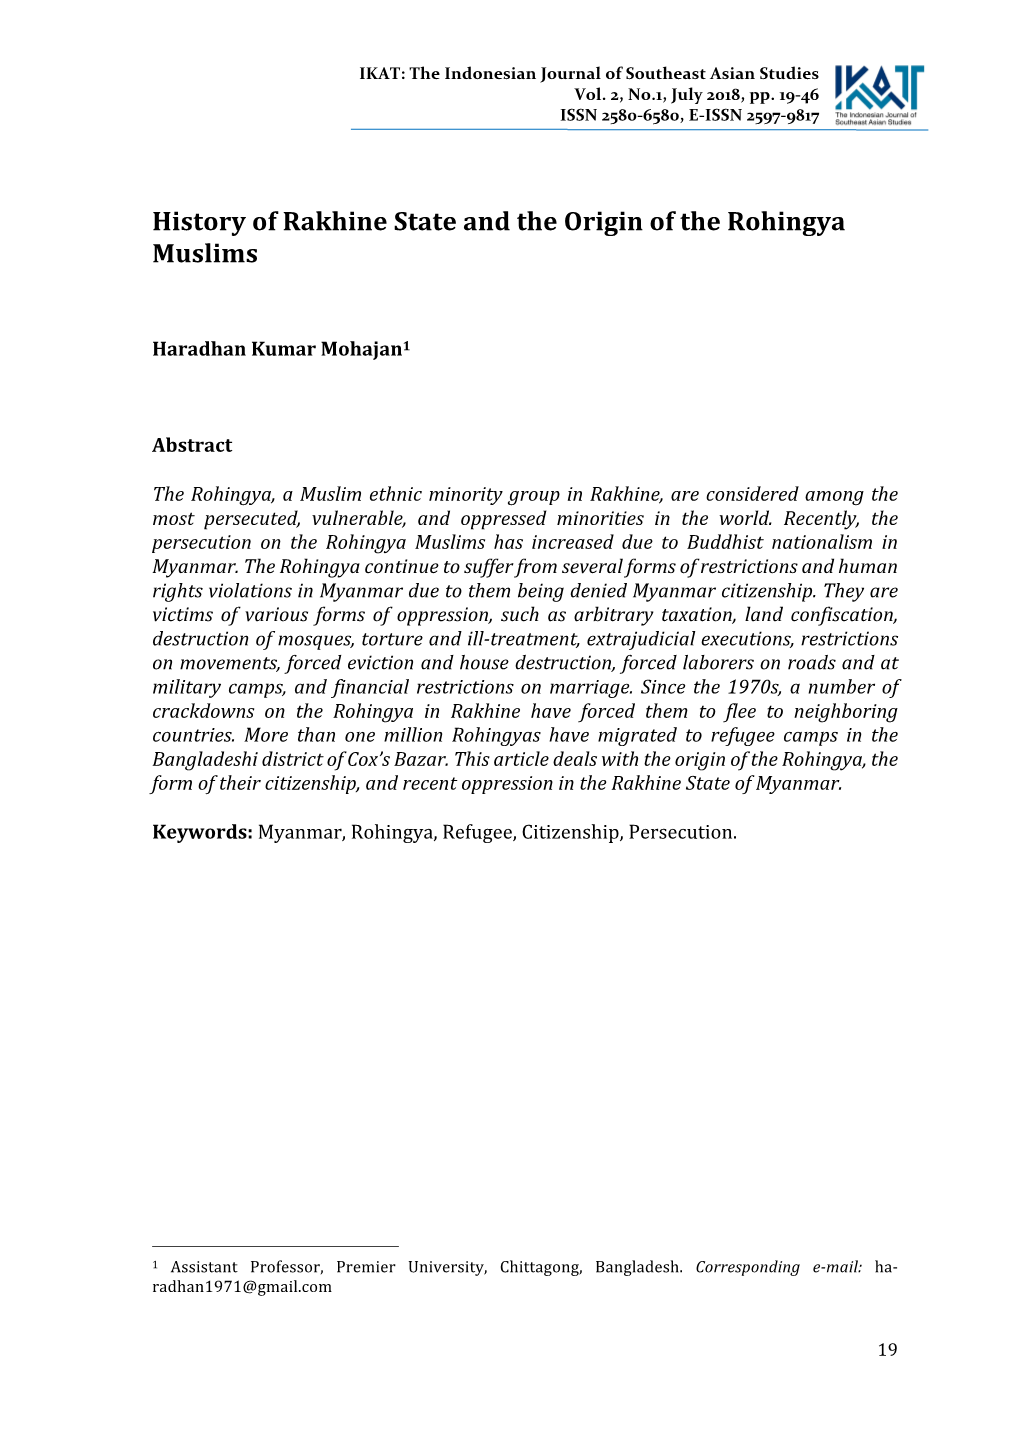 History of Rakhine State and the Origin of the Rohingya Muslims